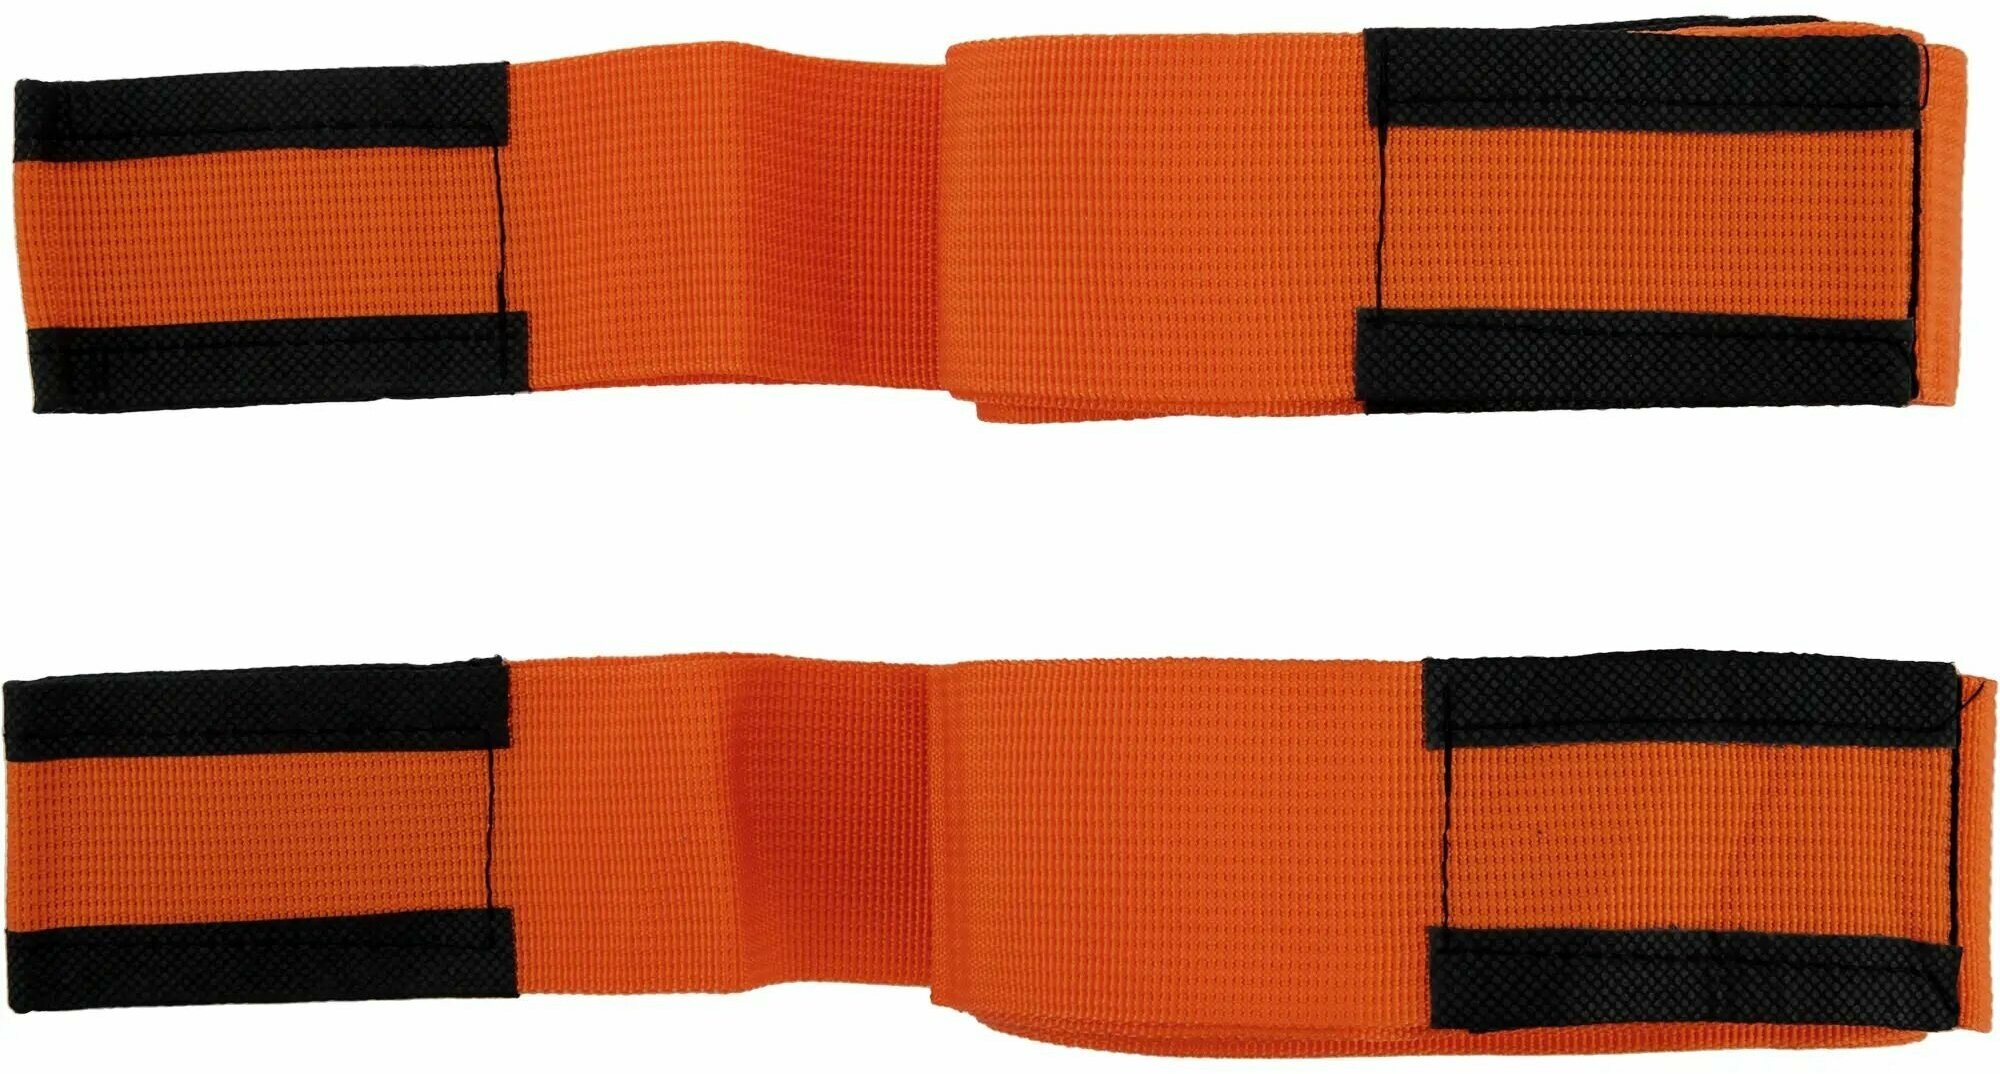 Ремни для переноски мебели цвет оранжевый, 2 шт.